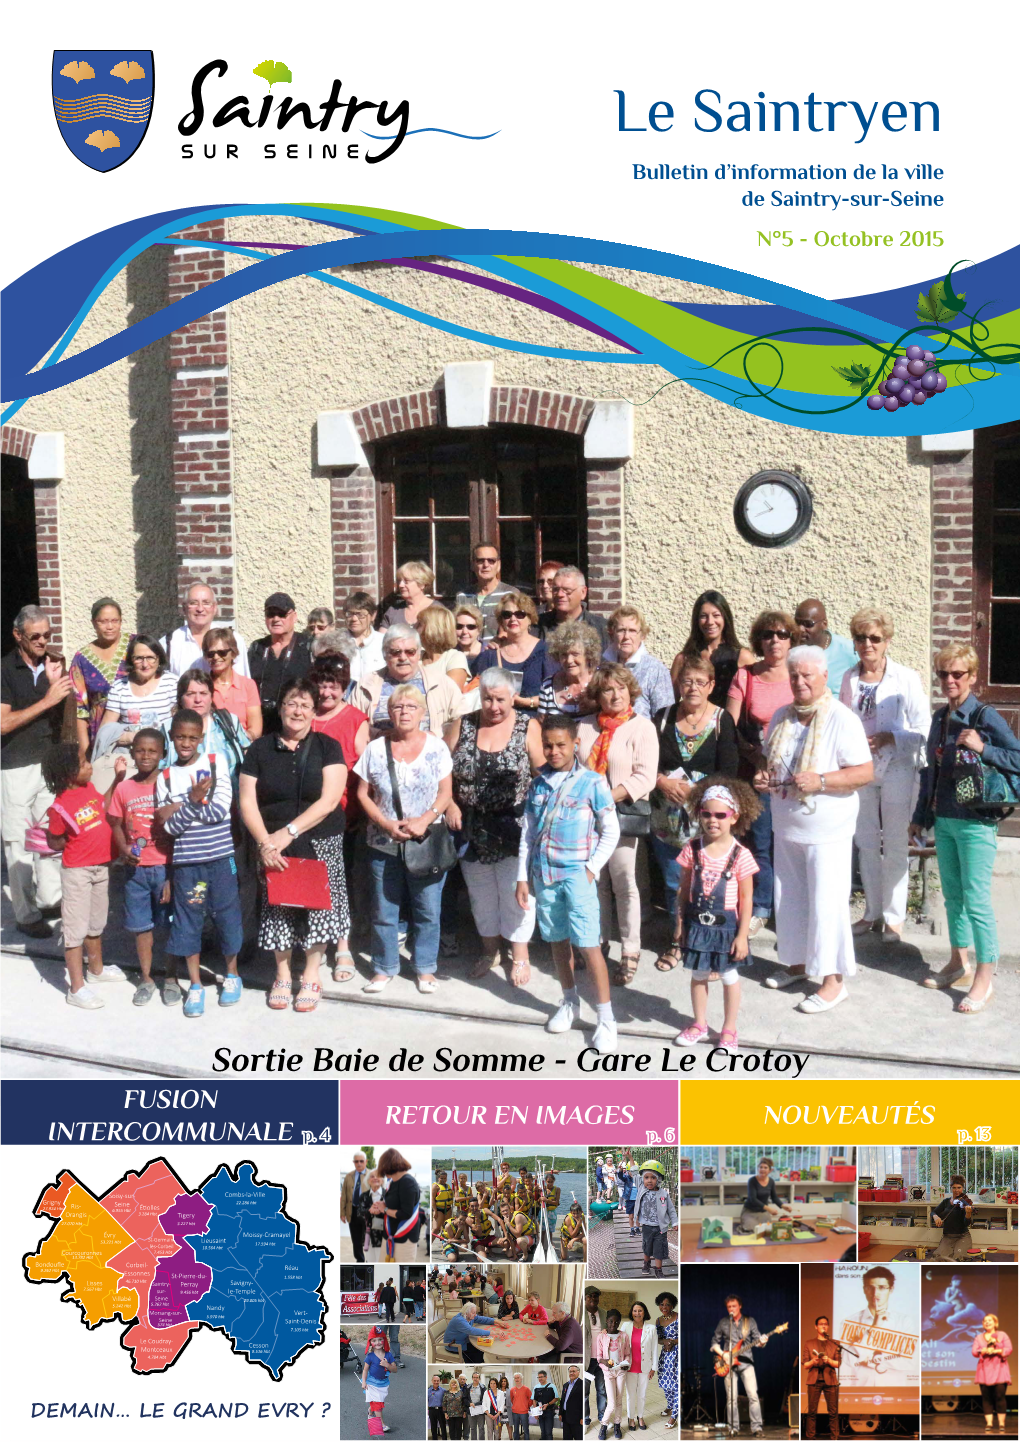 Le Saintryen Bulletin D’Information De La Ville De Saintry-Sur-Seine N°5 - Octobre 2015